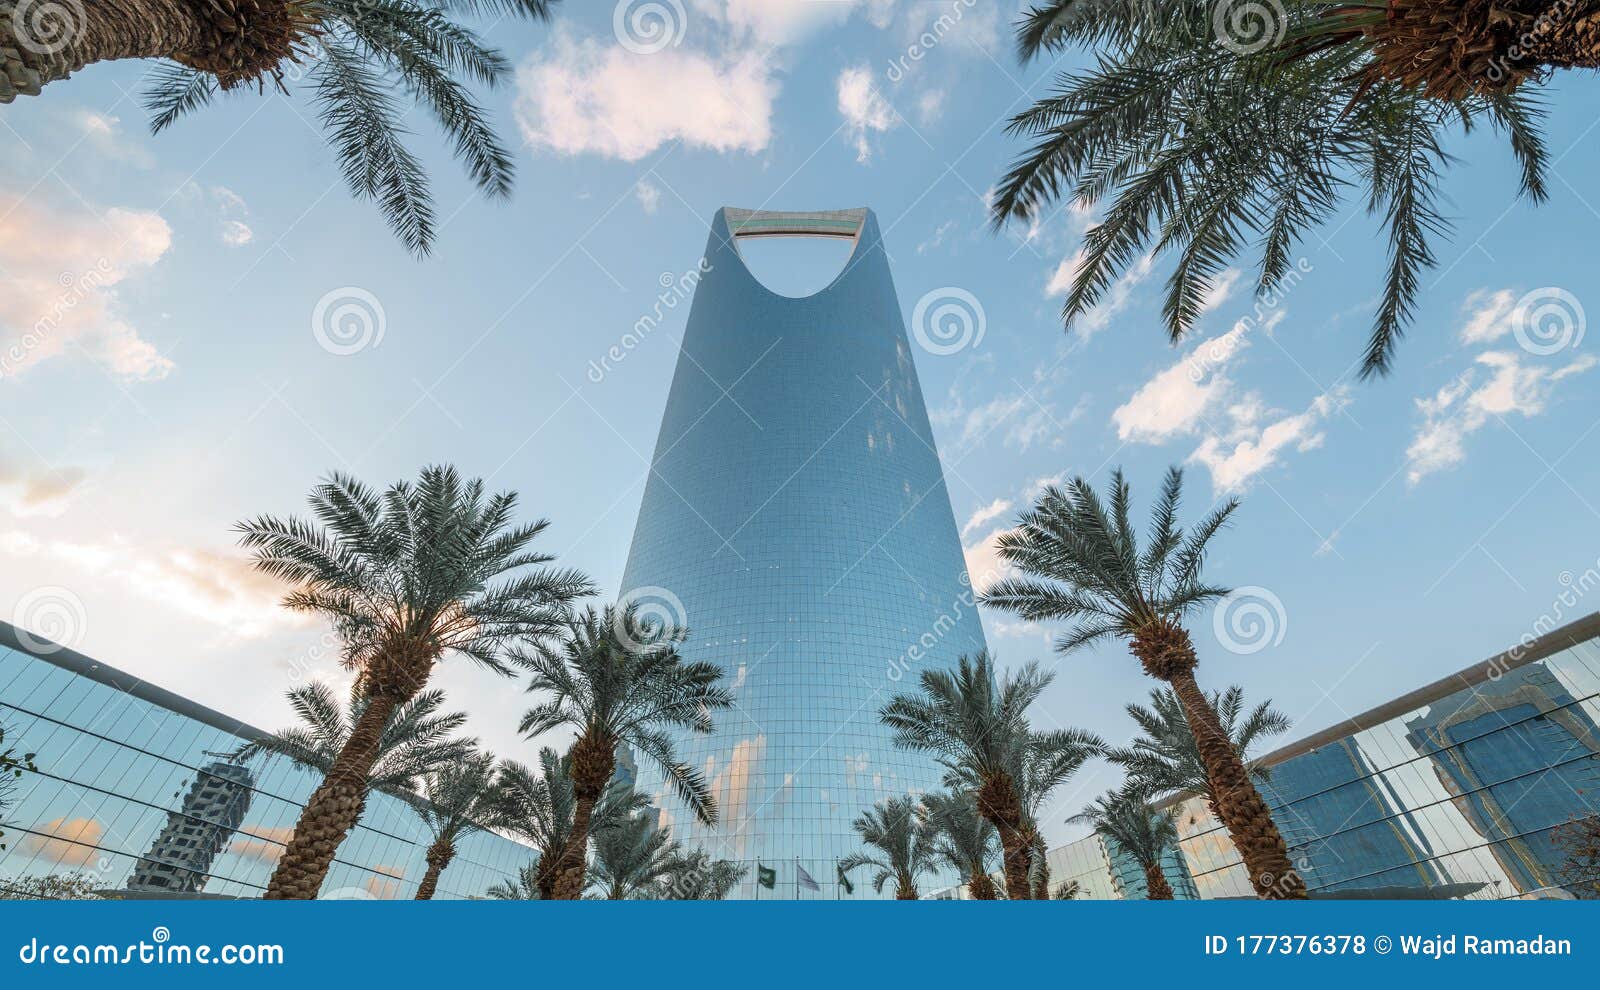 saudi arabia, riyadh / ksa - april 20 2019: riyadh sunset, kingdom tower day to night - saudi arabia tower landmark - burj